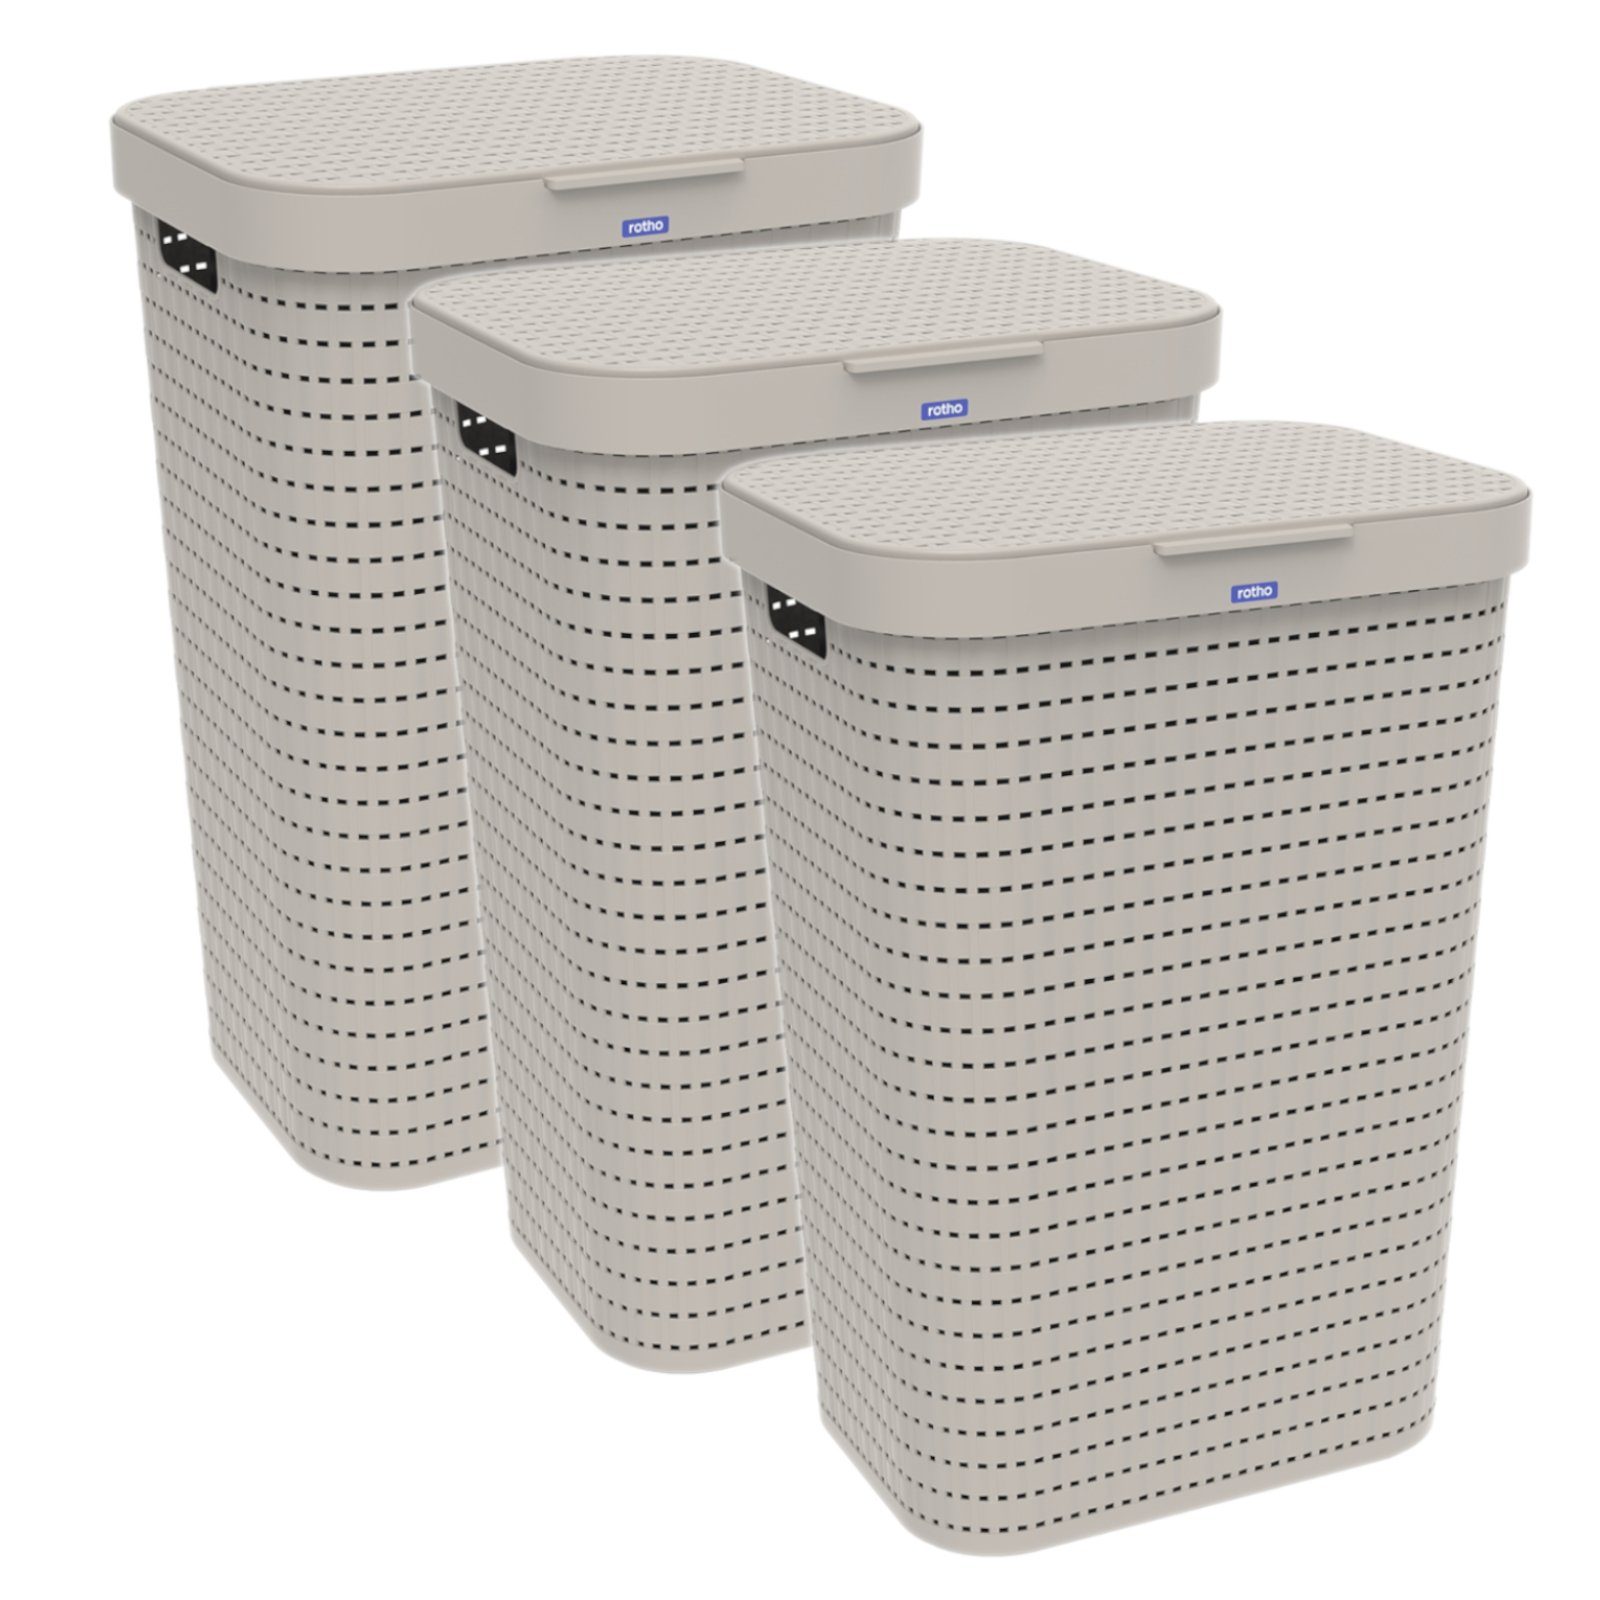 ROTHO Wäschekorb Country 3er-Set Wäschesammler 55l mit Deckel, Kunststoff (PP) BPA-frei (Wäschesammlerset, 3er-Set), Löcher an den Seiten ermöglicht Luftzirkulation innerhalb der Wäschebox